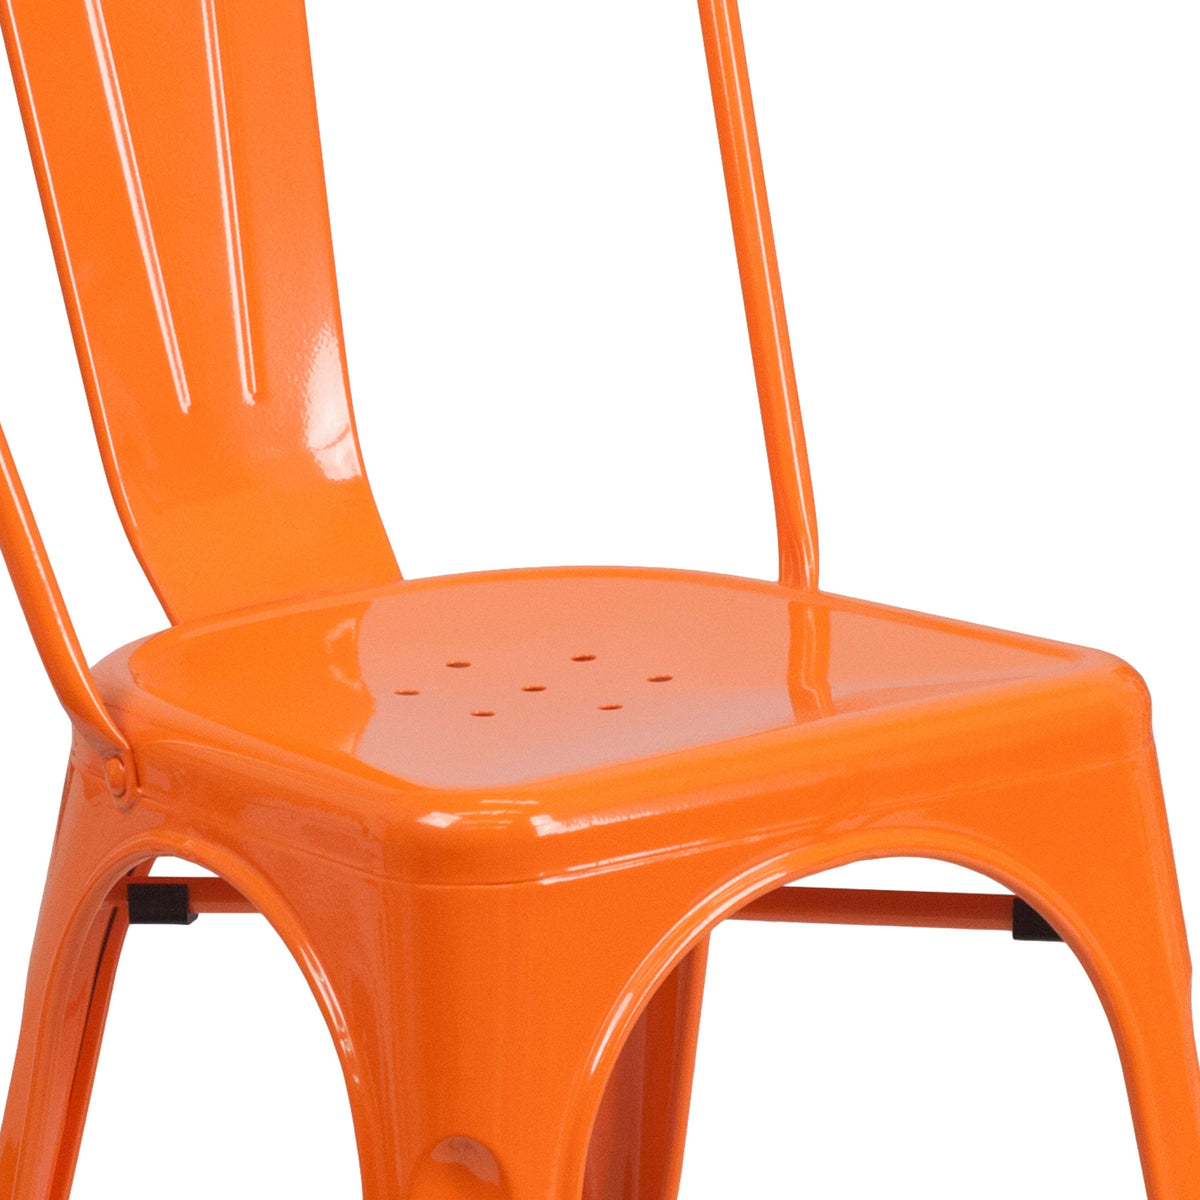 Orange |#| Orange Metal Indoor-Outdoor Stackable Chair - Restaurant Chair - Bistro Chair